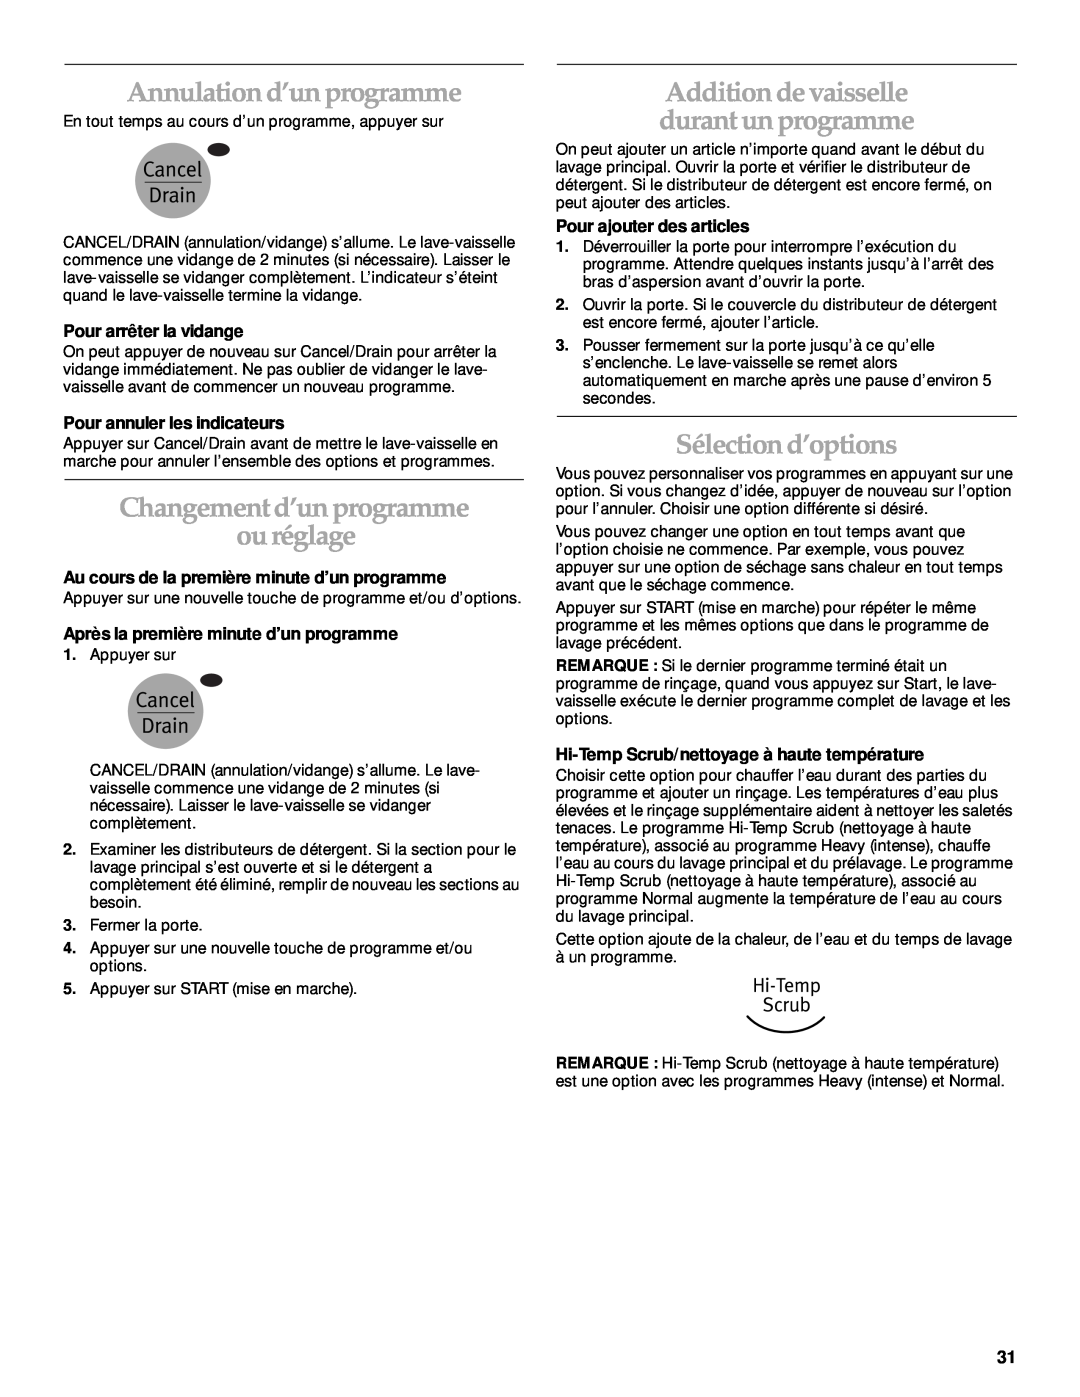 KitchenAid KUDP01TJ manual Annulation d’un programme, Changement d’un programme ou réglage, Sélection d’options 